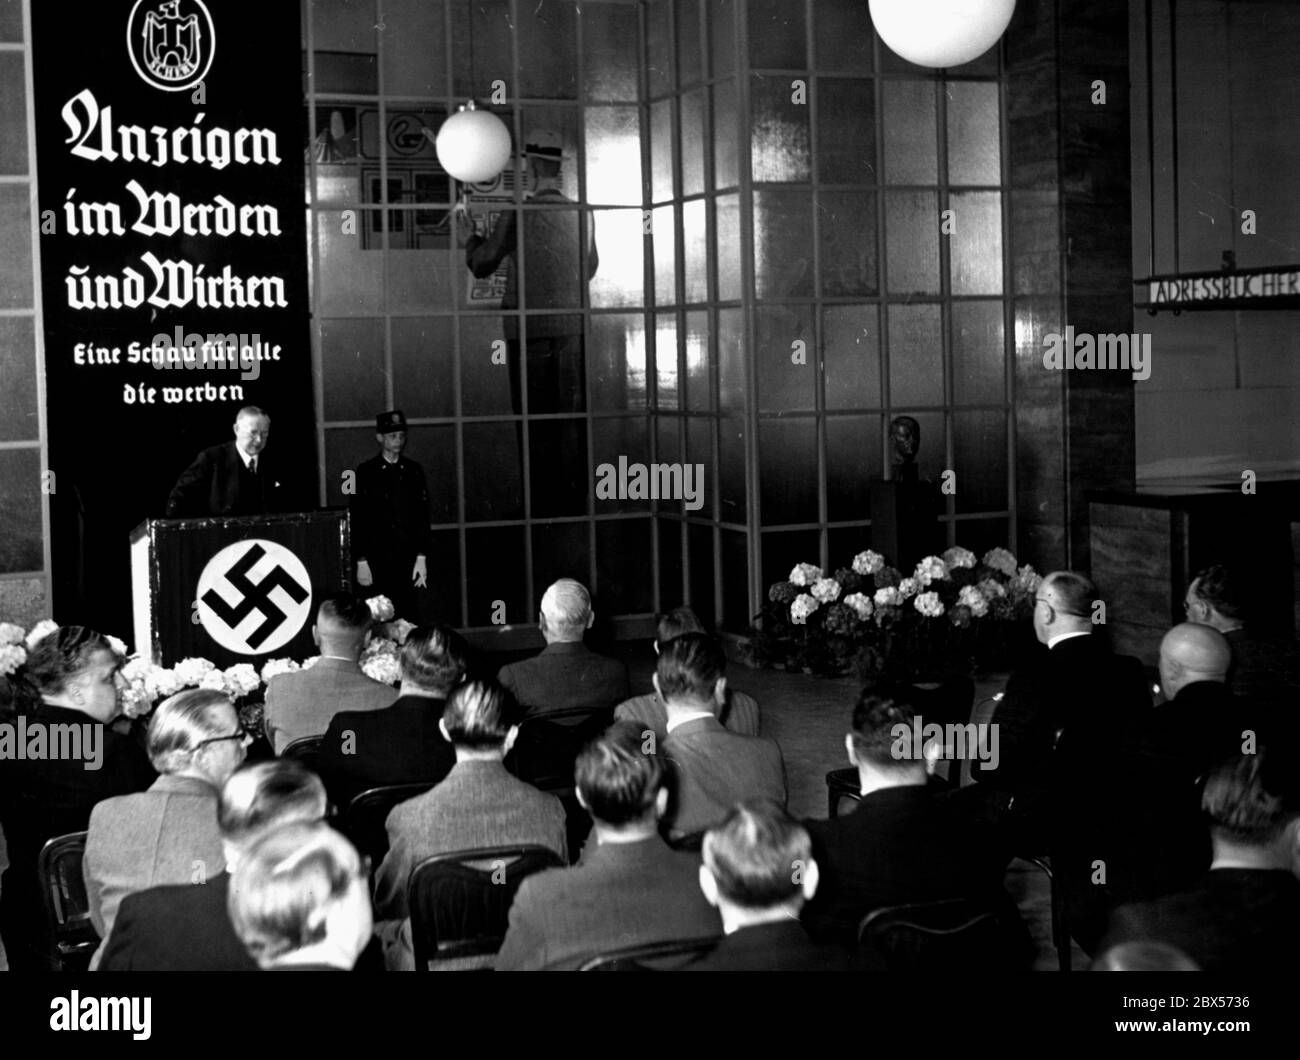 The general director of the Scherl-Verlag Ludwig Klitzsch gives the opening speech at the exhibition 'Anzeigen im Werden und Werken, eine Schau fuer alle, die werben', which takes place in the new reading room of the Scherl publishing house (Scherlhaus). Stock Photo